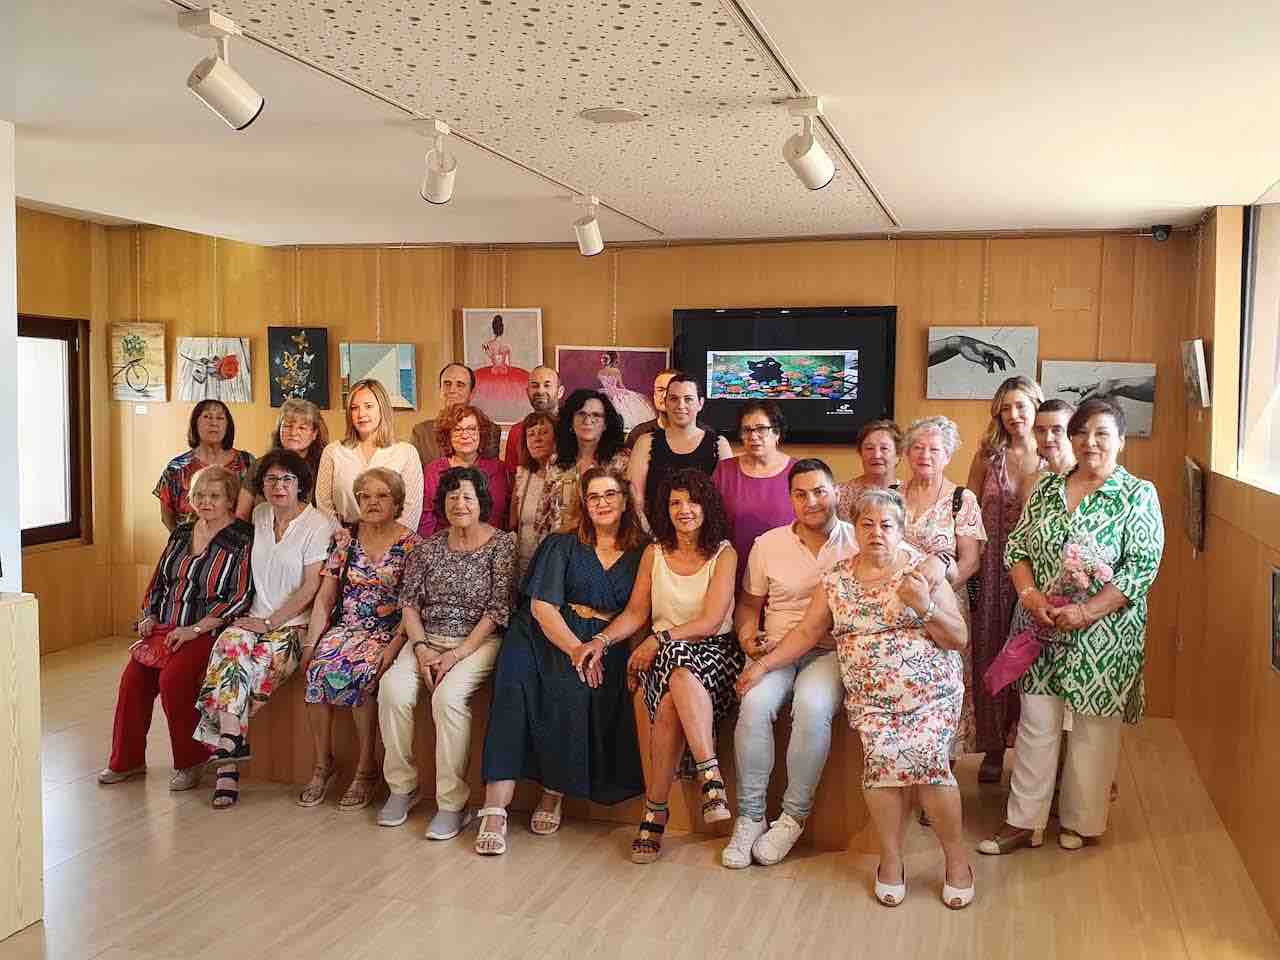 Exposición pictórica colectiva “Diversidad” en Guadix